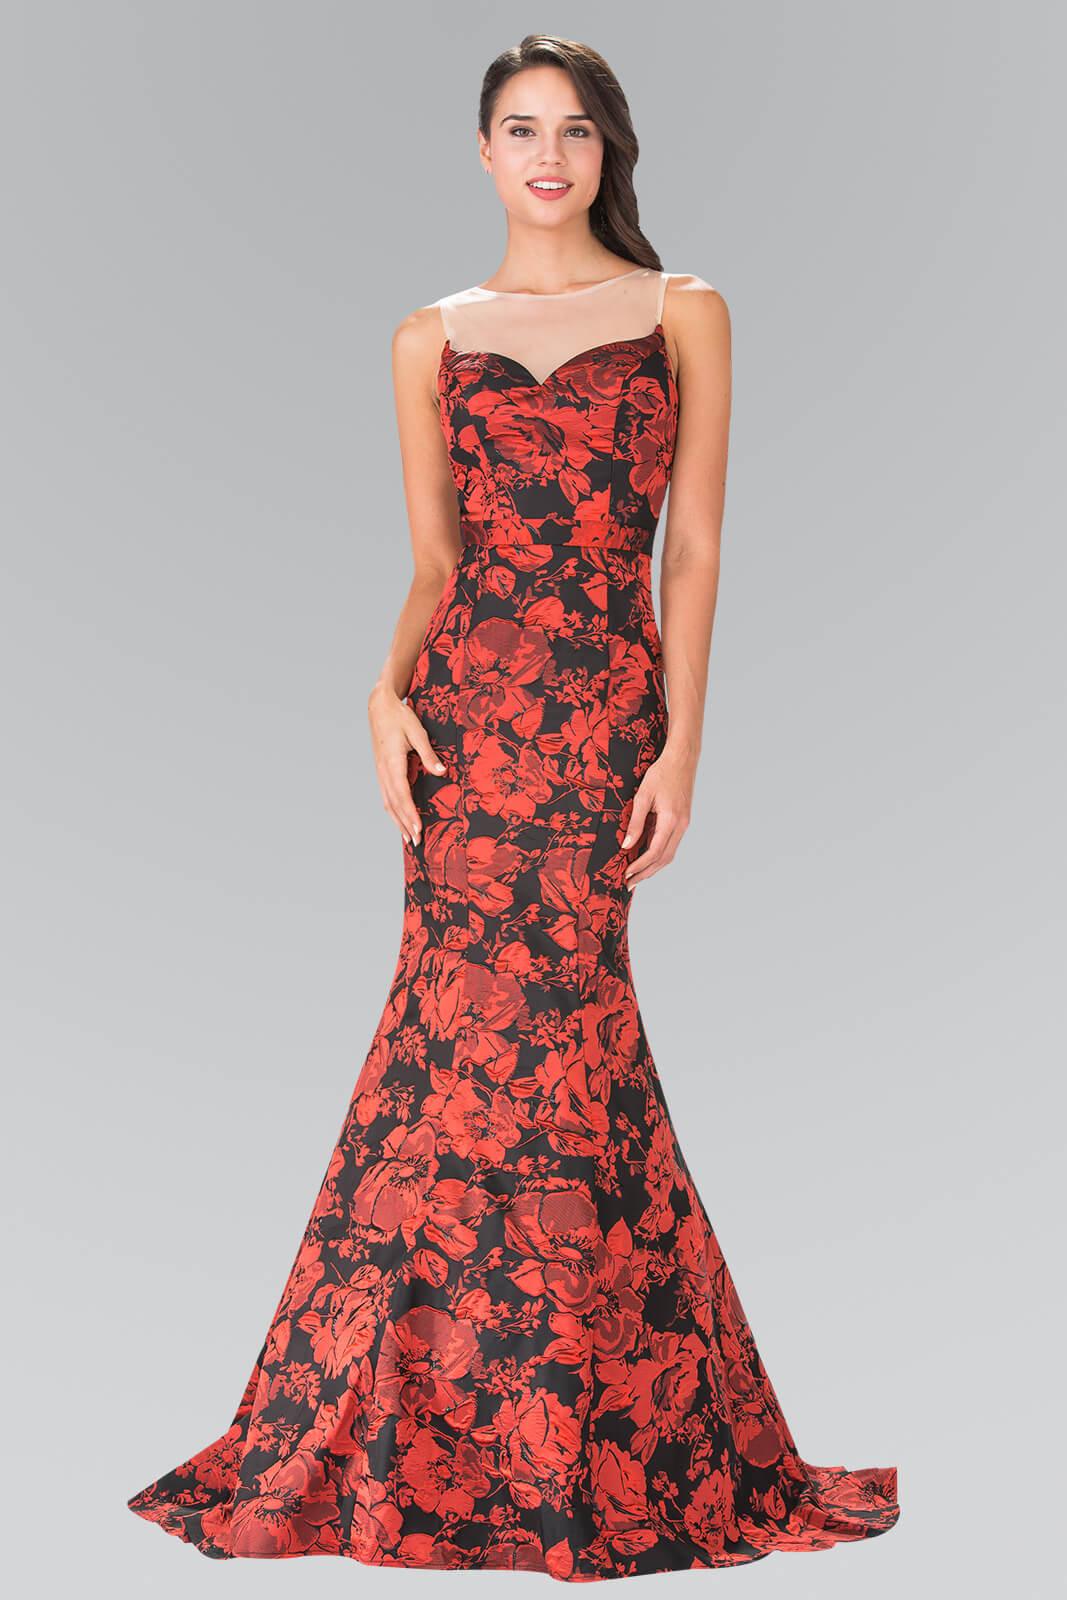 Prom Long Formal Dress Floral Print Evening Gown - The Dress Outlet Elizabeth K